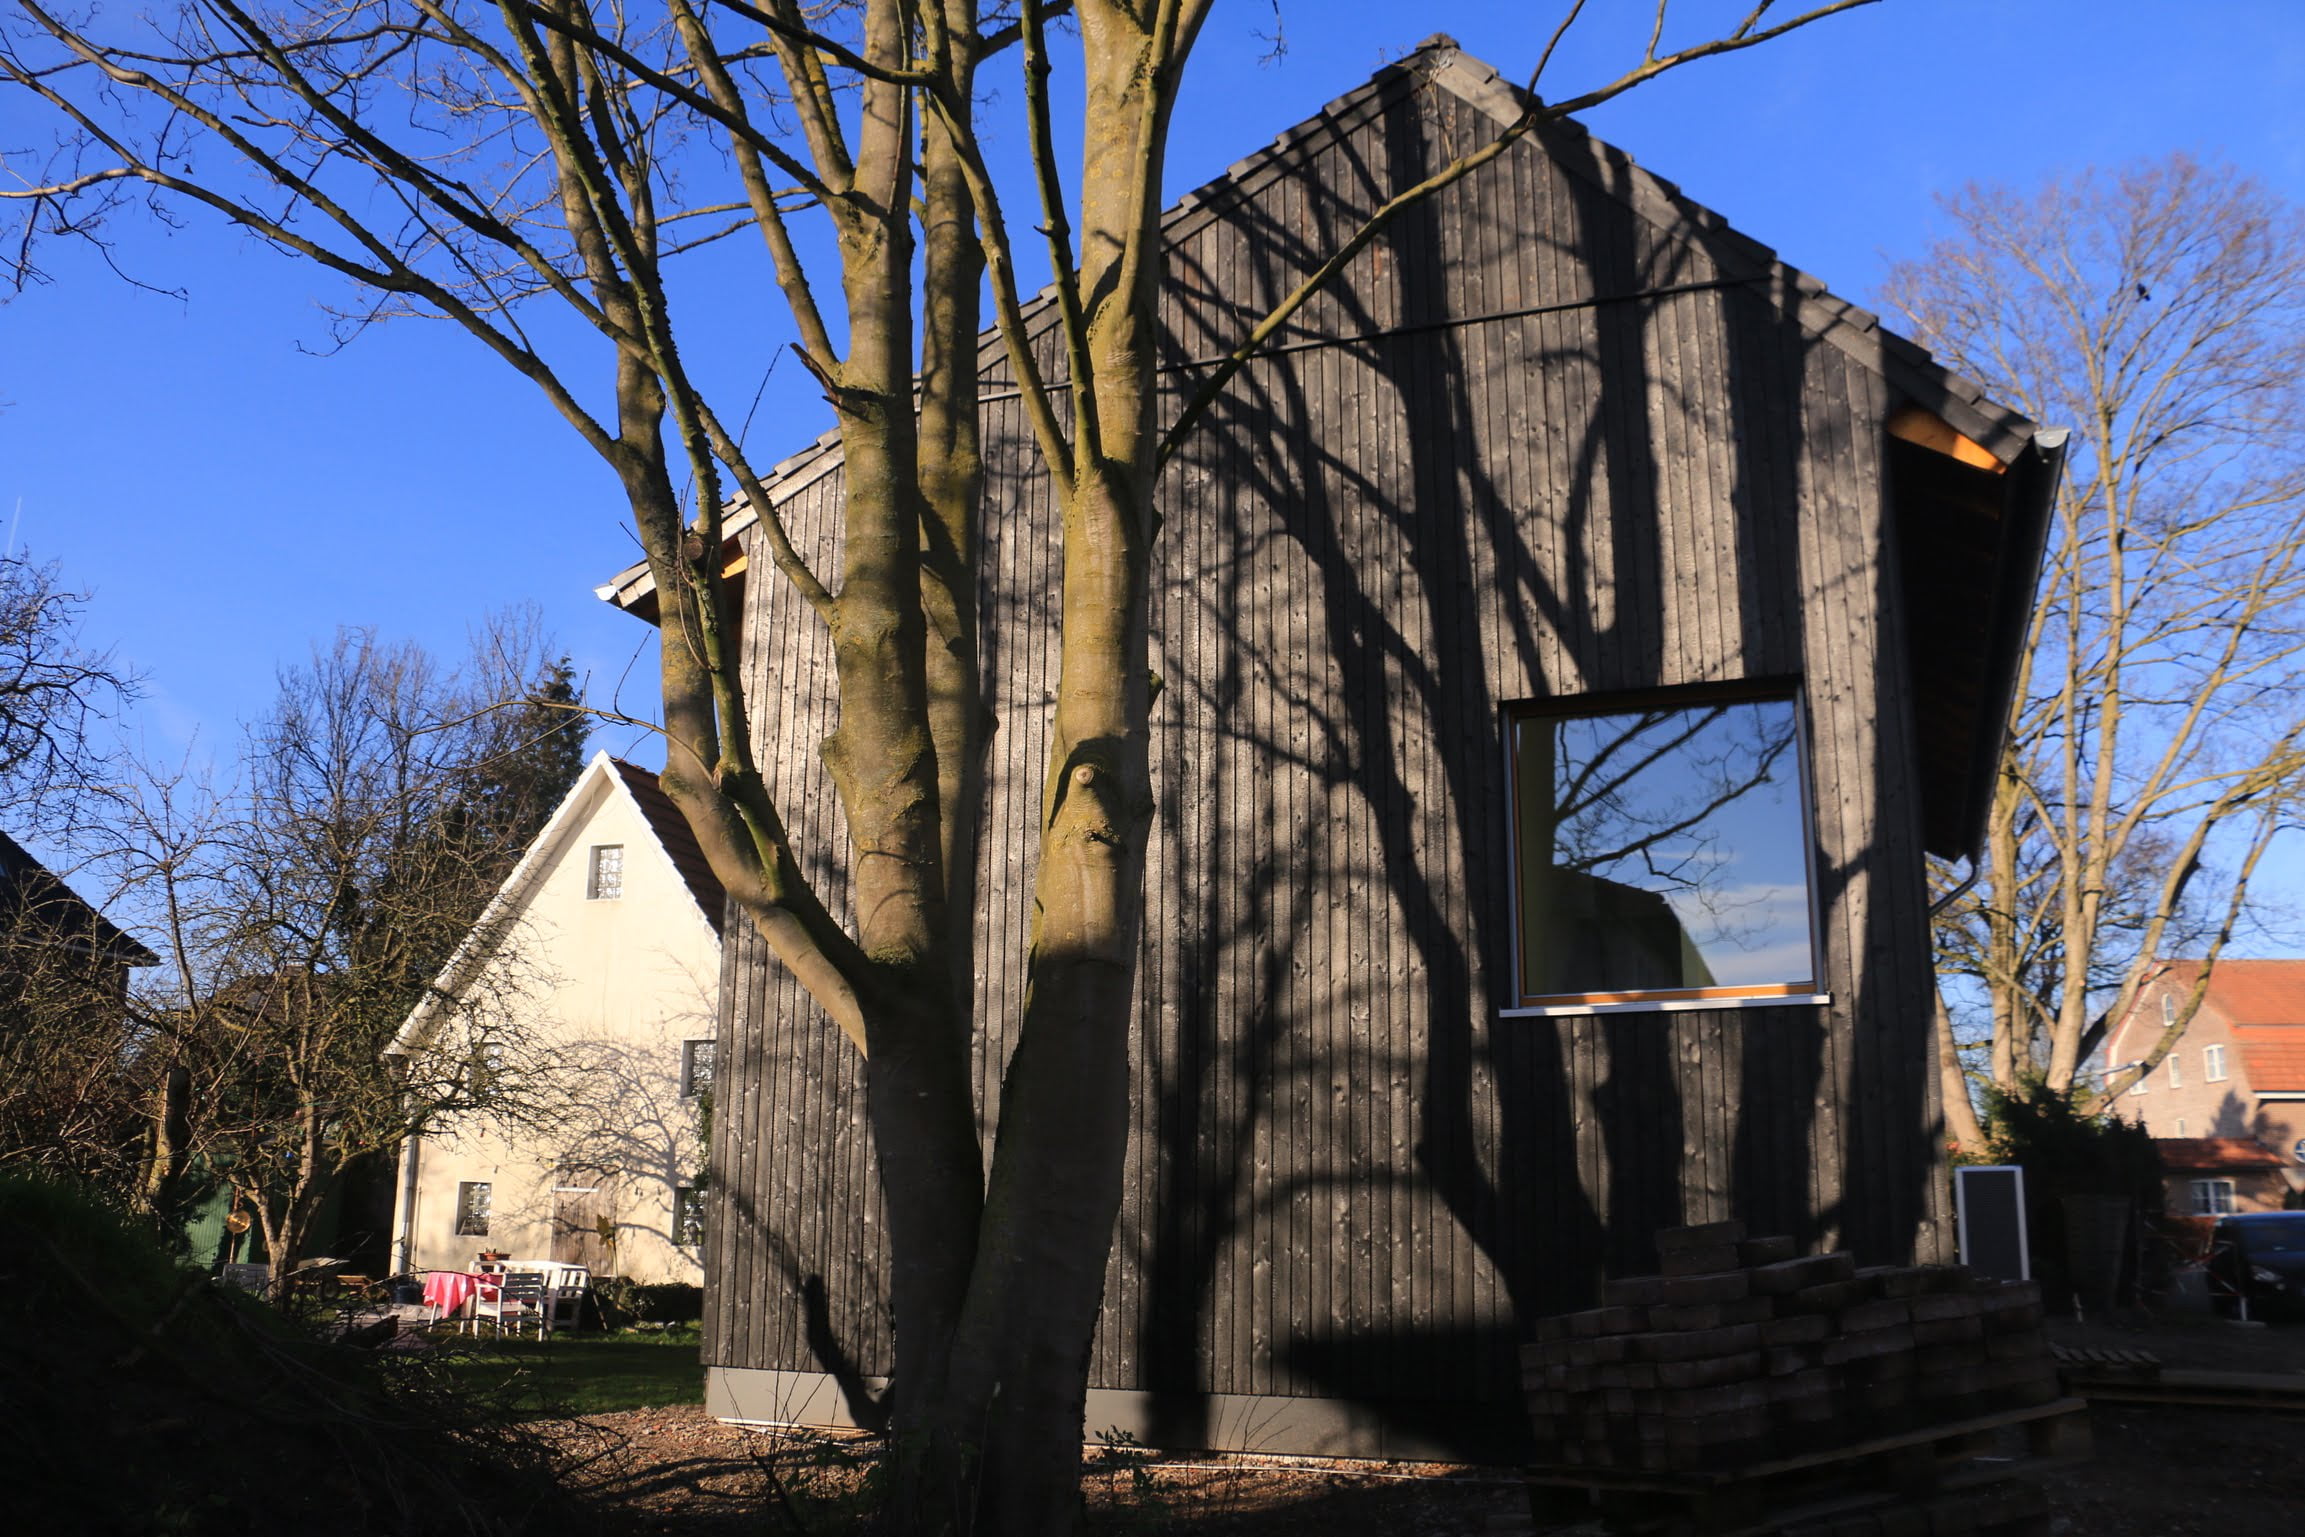 Stirnseite von einem Holzhaus von Wohnbehagen mit einem großen quadratischen Fenster.